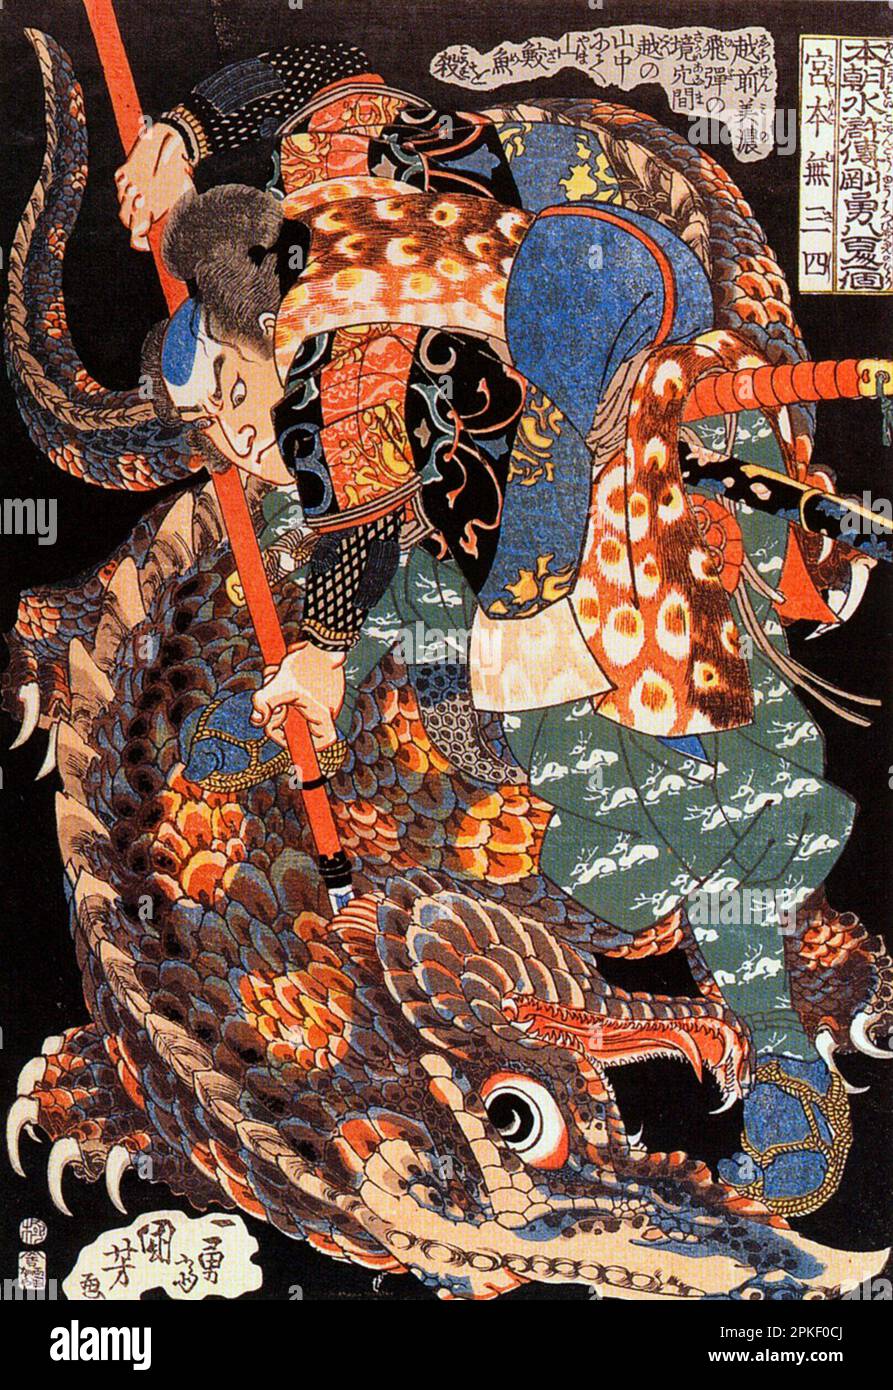 Miyamoto Musashi tue un requin (Yamazame) dans les montagnes à la frontière de la province d'Echizen (près de Mino, province de Hida). Miyamoto Musashi était un célèbre maître d'épée, poète, peintre et artisan - Utagawa Kuniyoshi Banque D'Images